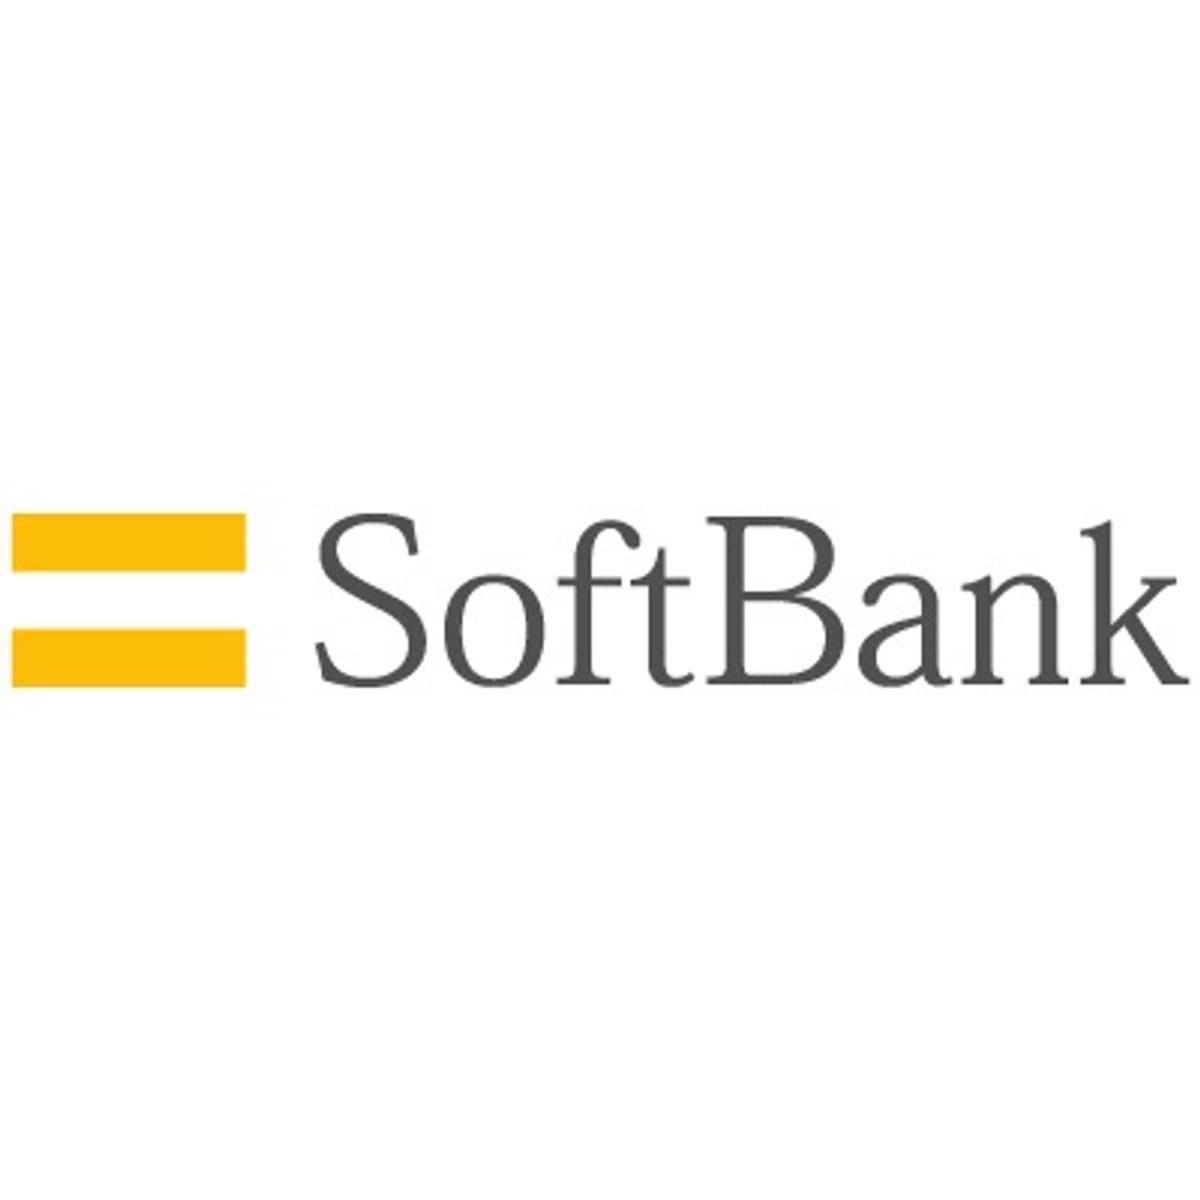 Softbank duikt in de rode cijfers image